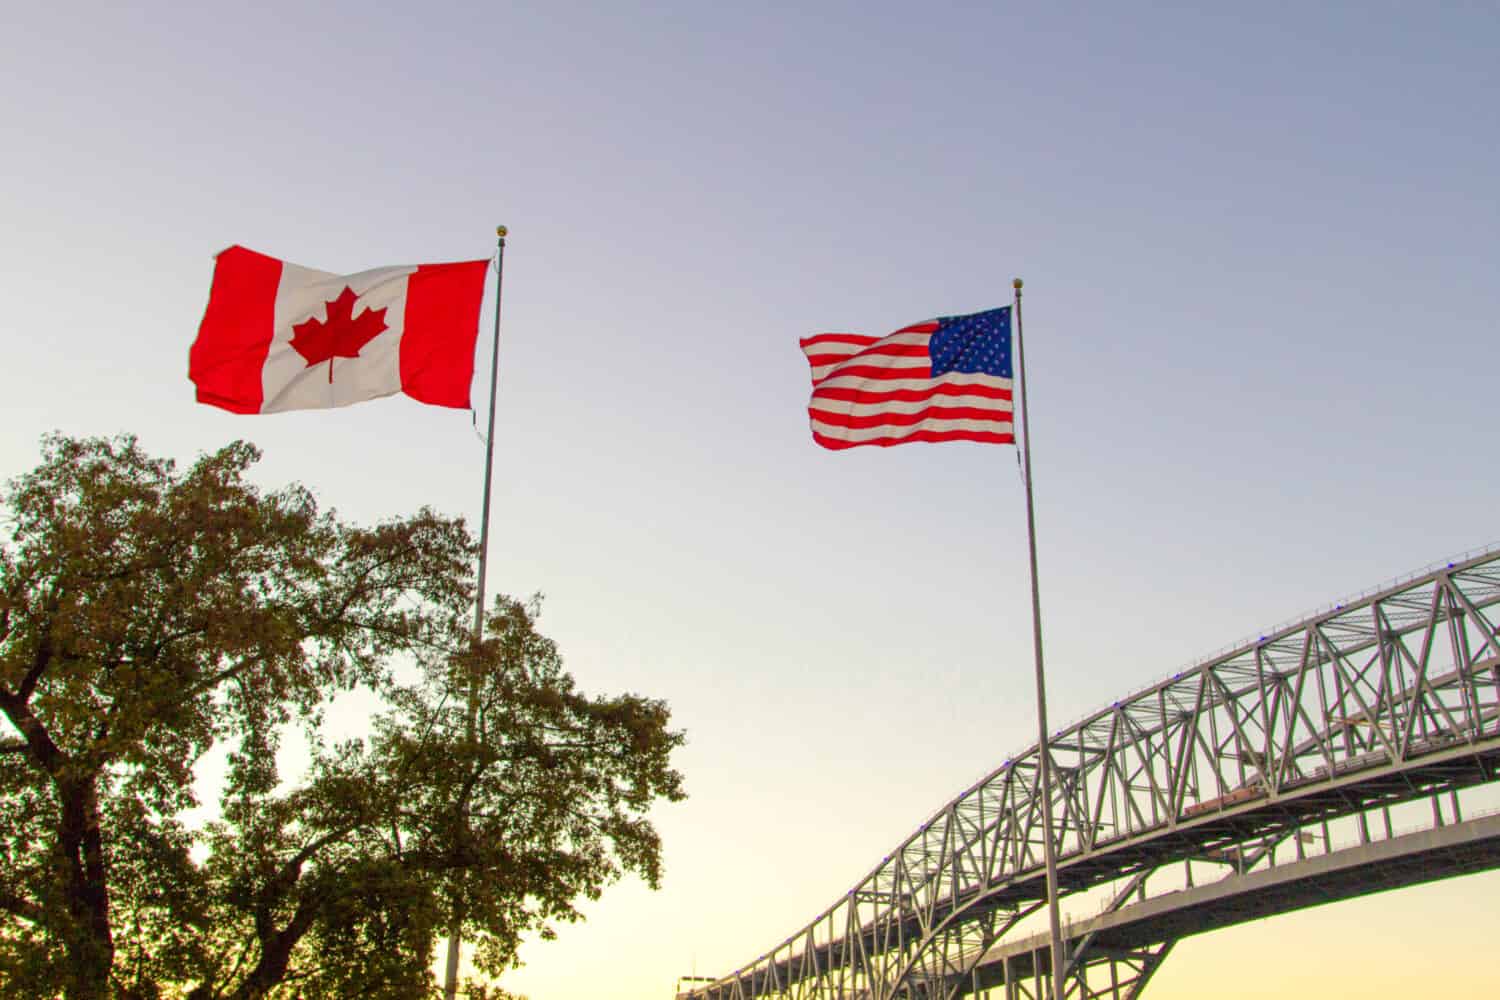 Passaggio di frontiera internazionale.  Tramonto al confine del Blue Water Bridge tra Stati Uniti e Canada.  Il ponte collega Port Huron, Michigan e Sarnia, Ontario.